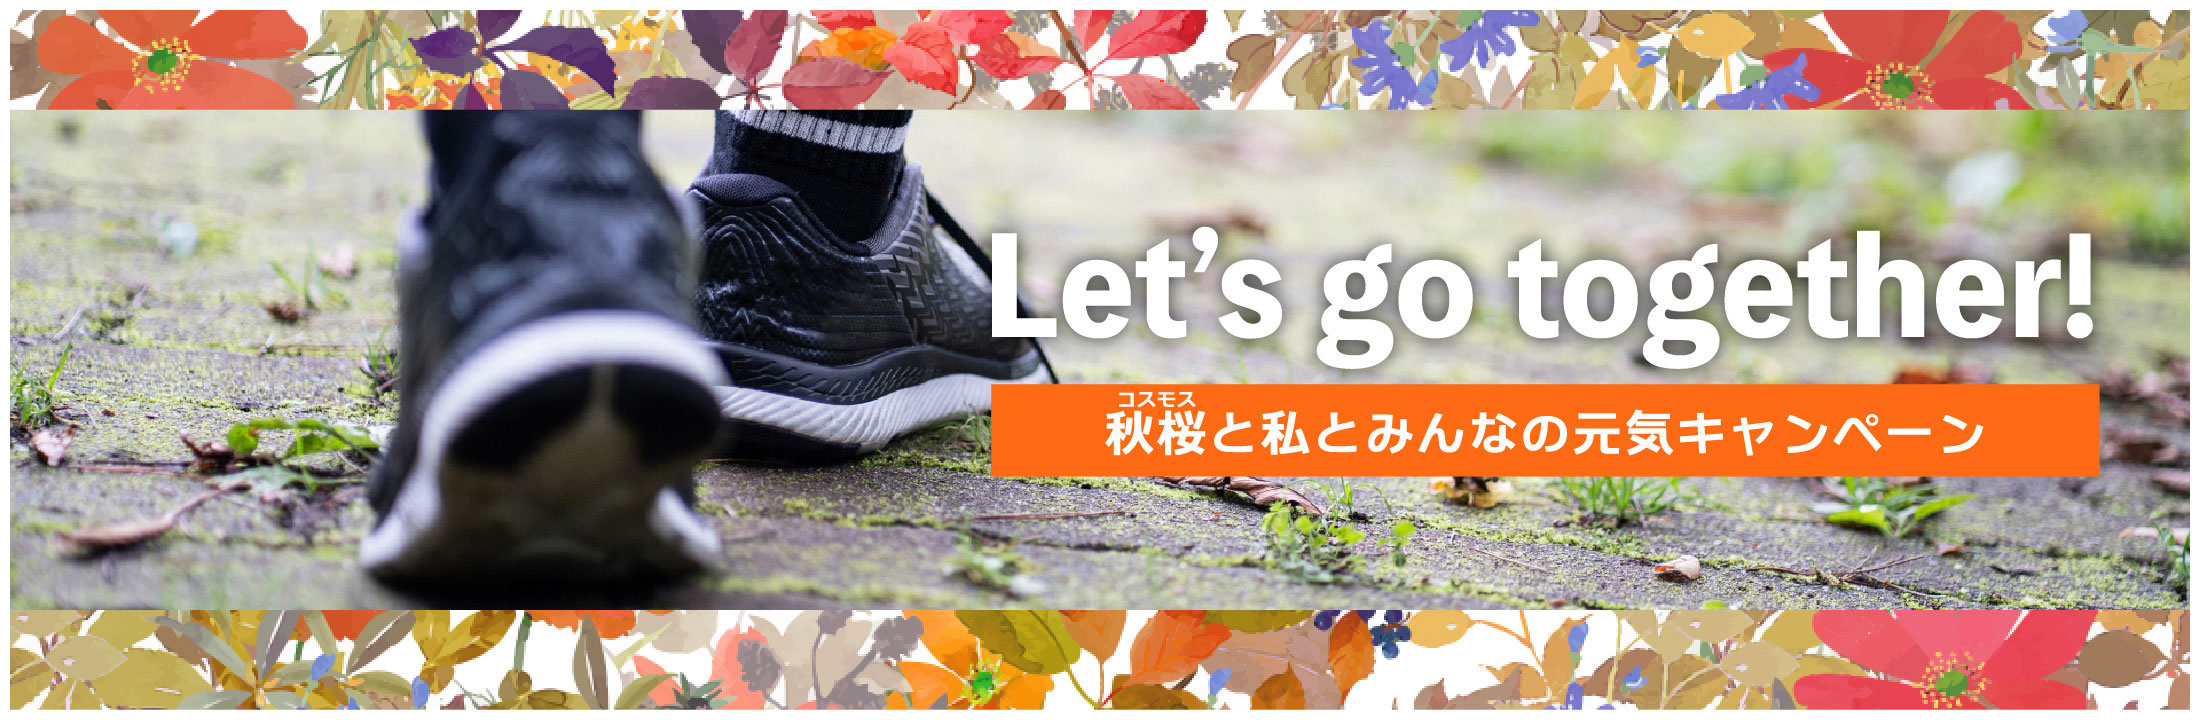 Let's go together! 秋桜と私とみんなの元気キャンペーン